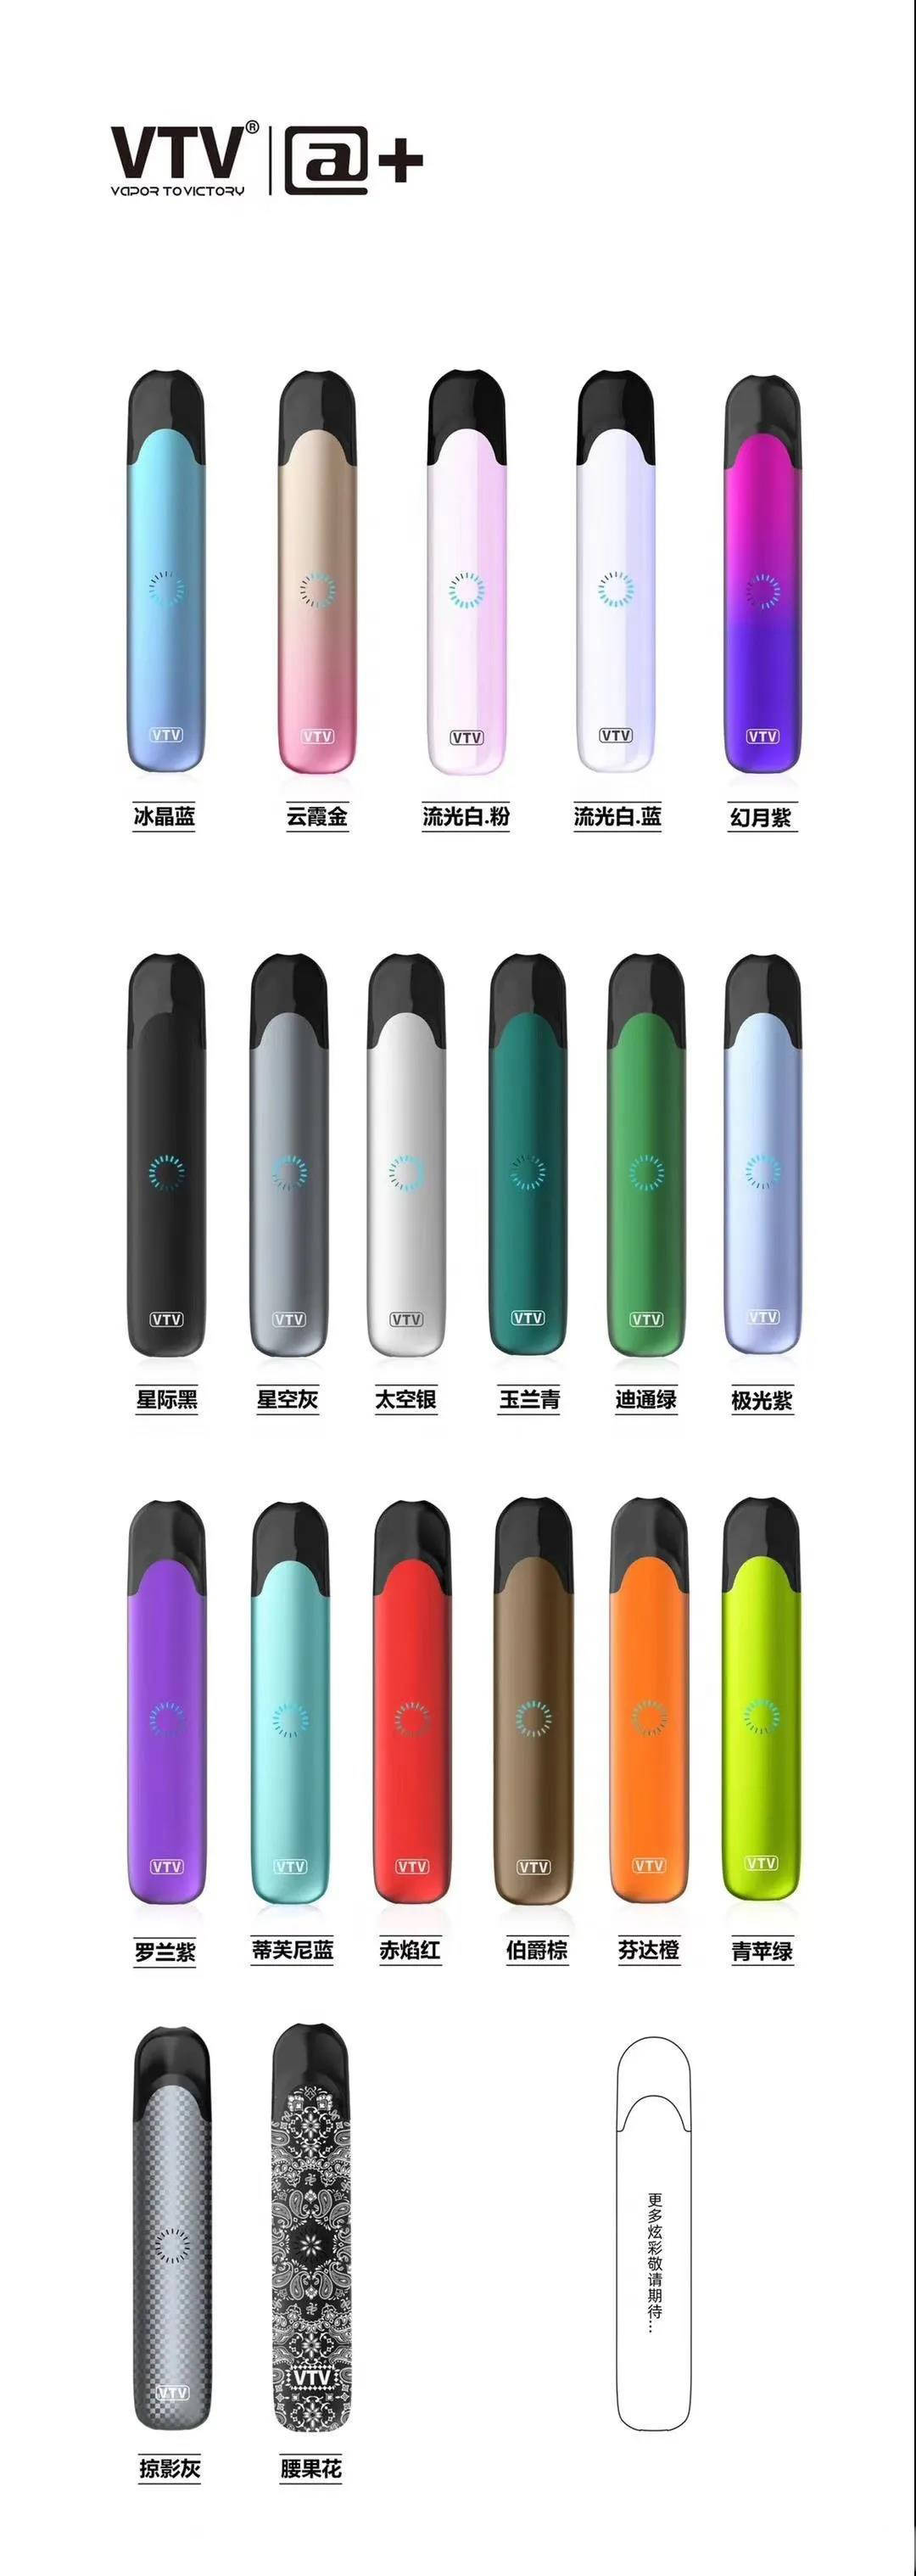 VTV@+电子烟新款产品来袭，独有的跑马灯设计，颜值与烟弹口味都好评如潮！